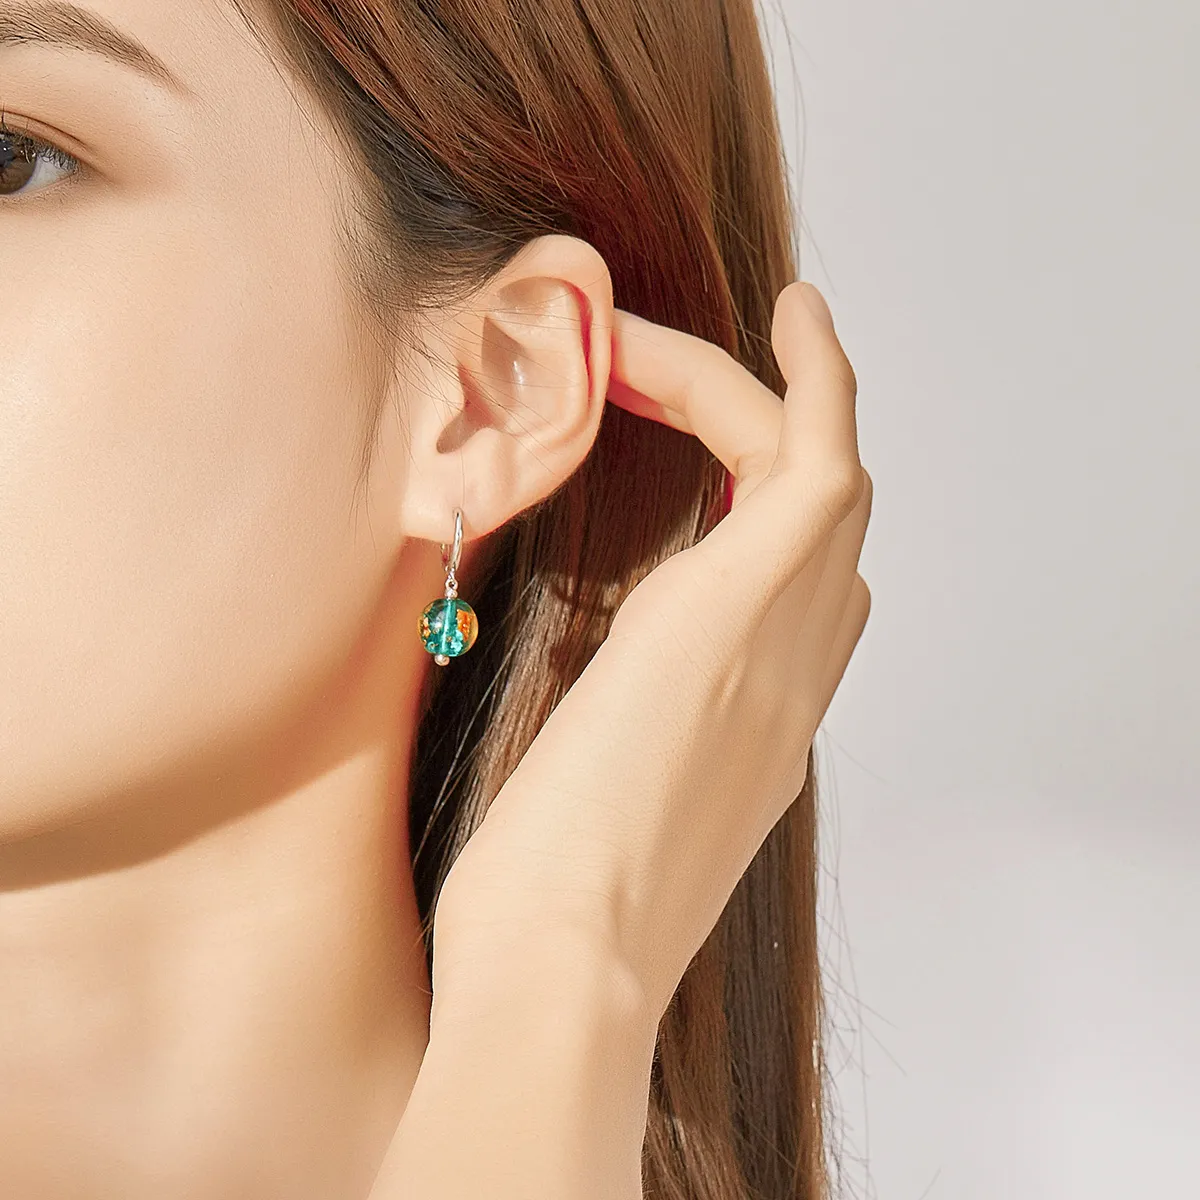 Pandora Style Silver Dream Glass Dangle Earrings - SCE817